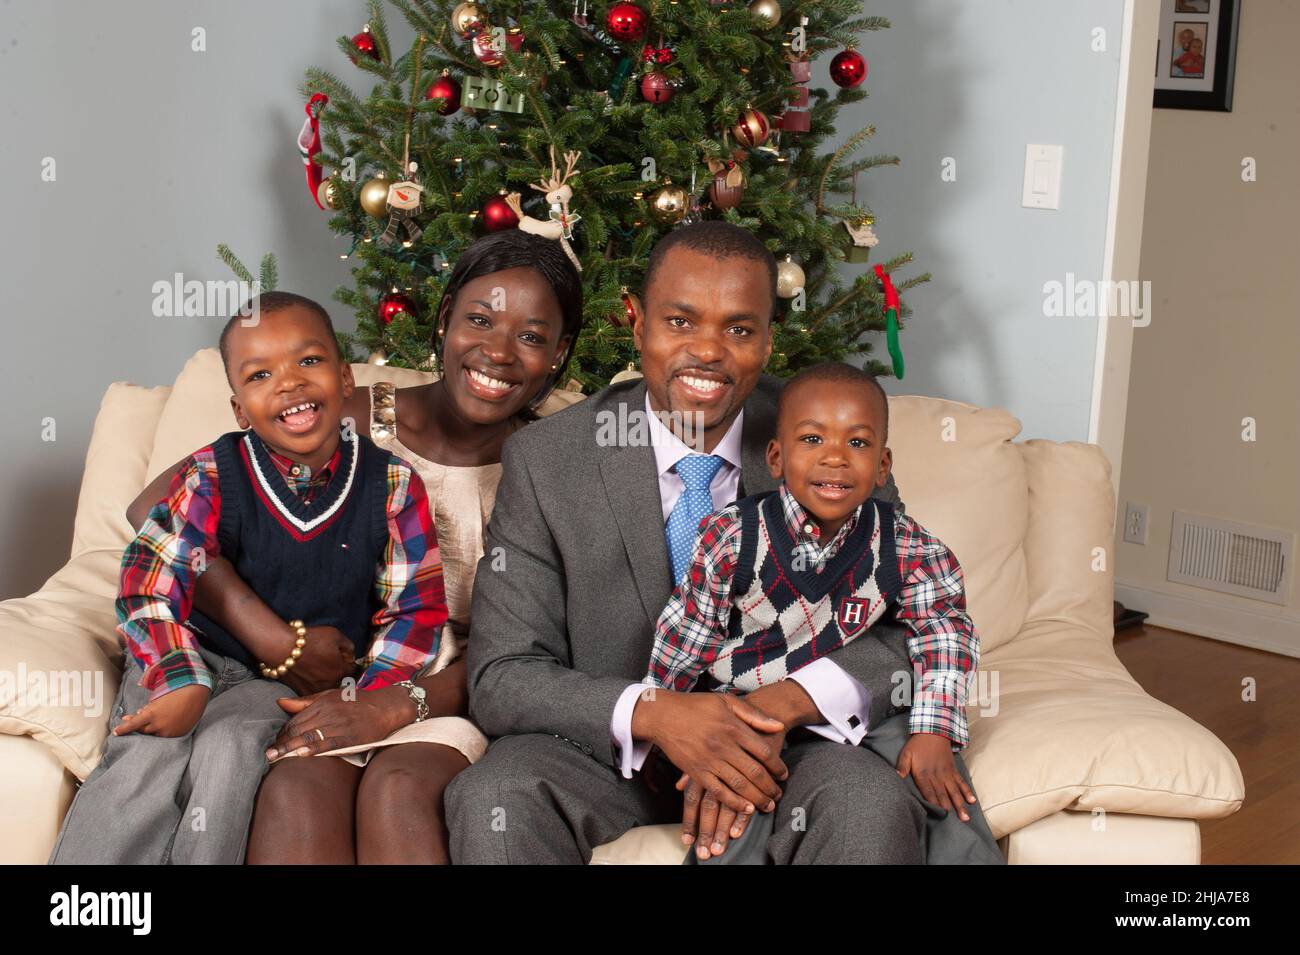 Retrato de familia en casa temporada navideña padres de 30s años con hijos de 2 y 4 años Foto de stock